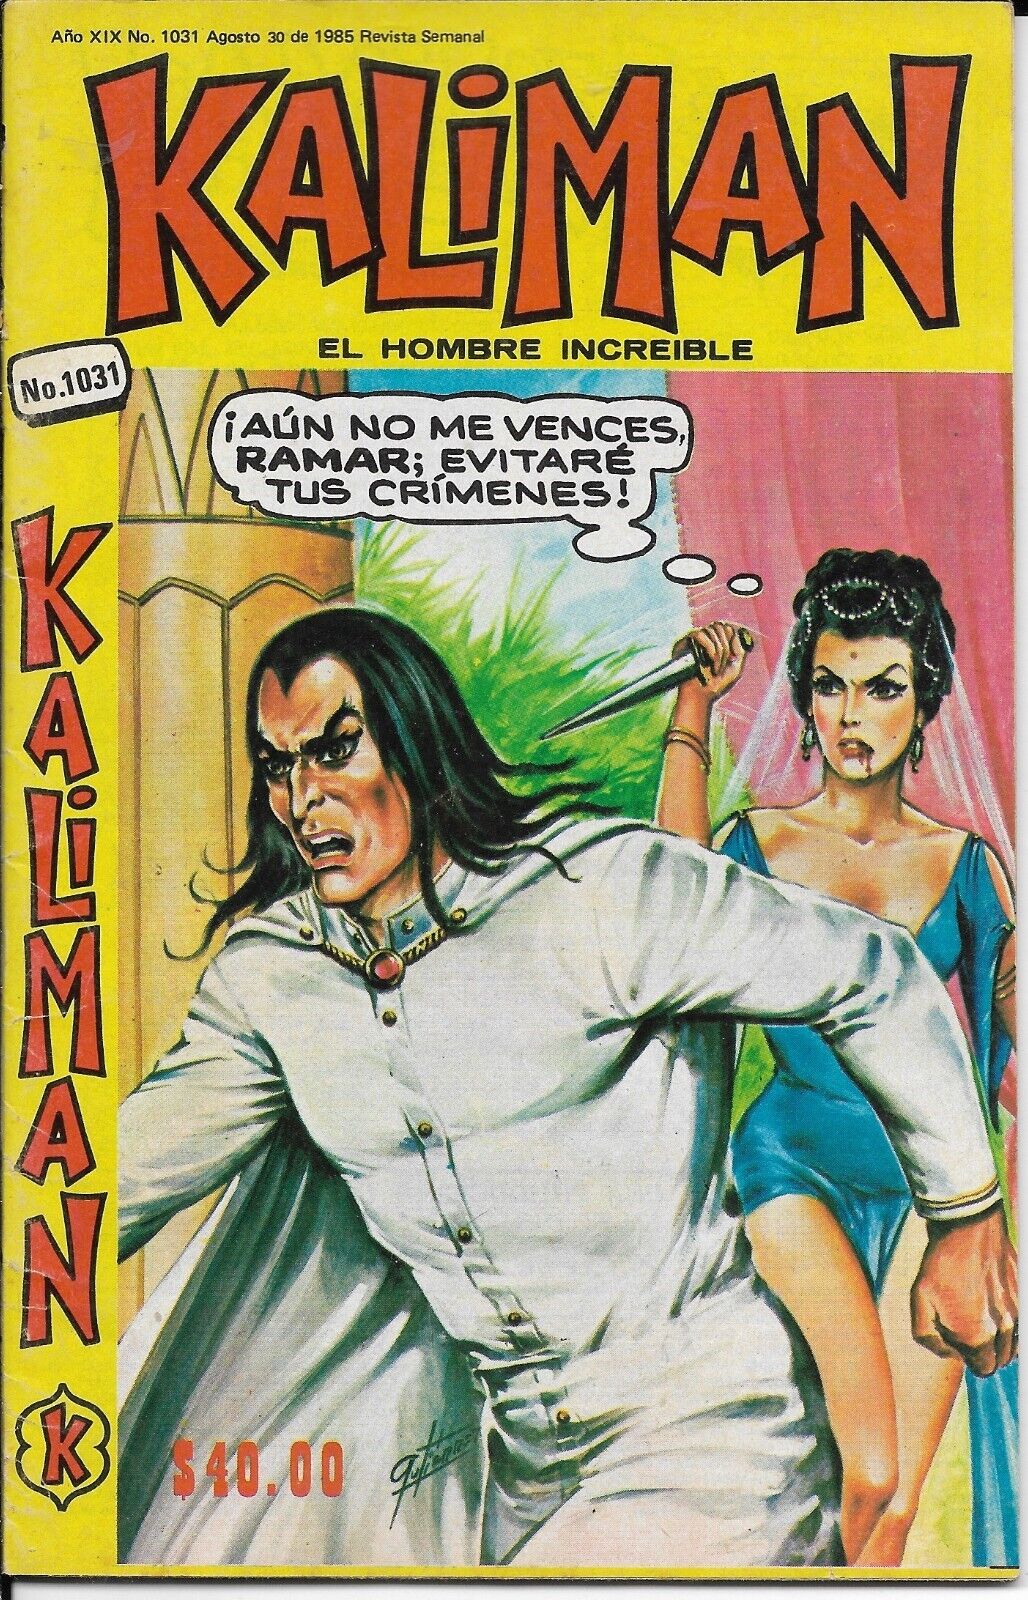 Kaliman El Hombre Increible #1031 - Agosto 30, 1985 - Mexico